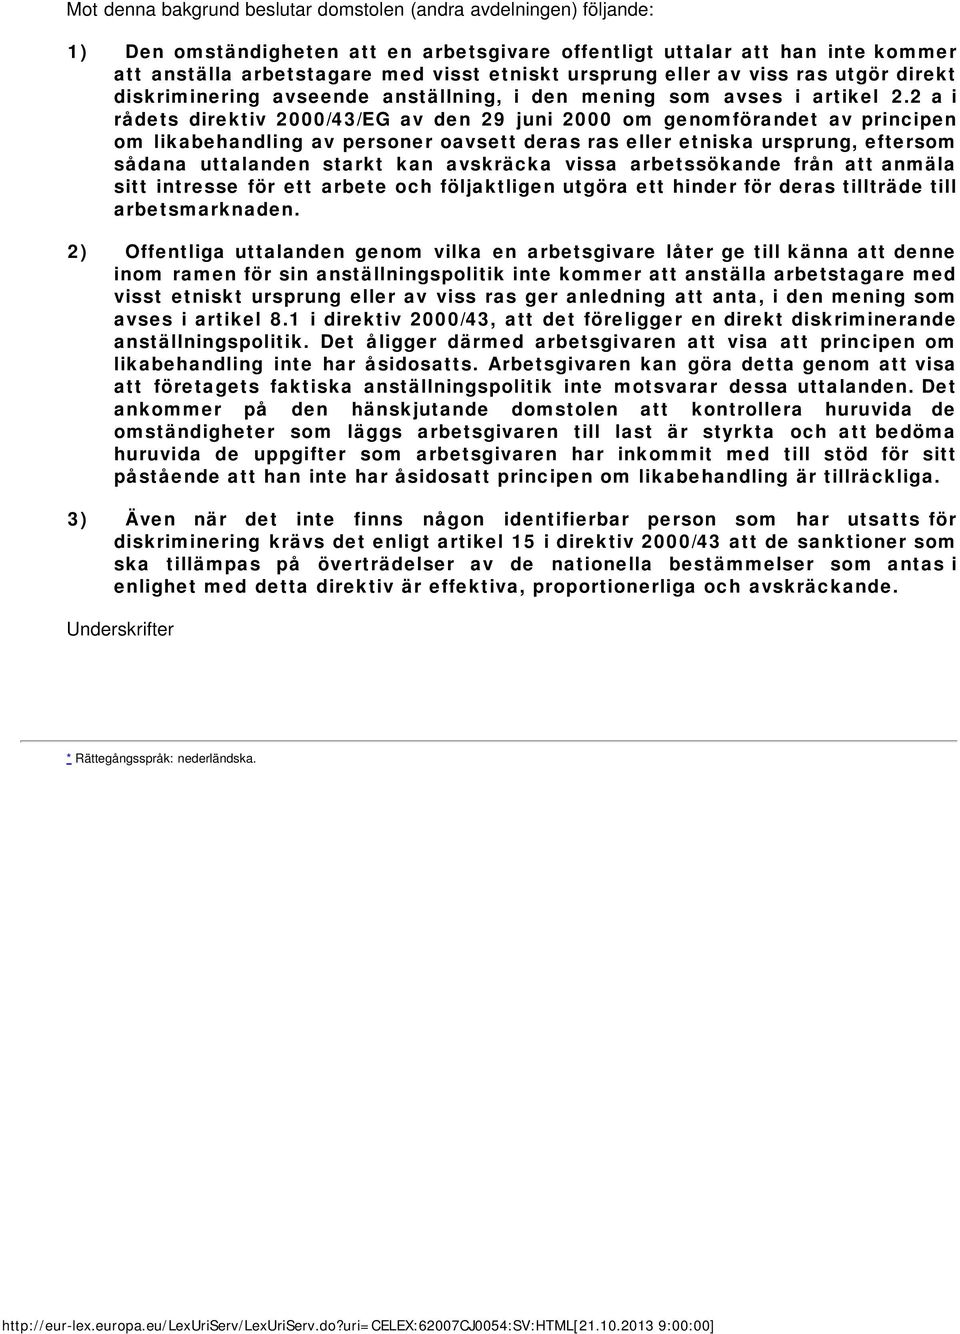 2 a i rådets direktiv 2000/43/EG av den 29 juni 2000 om genomförandet av principen om likabehandling av personer oavsett deras ras eller etniska ursprung, eftersom sådana uttalanden starkt kan